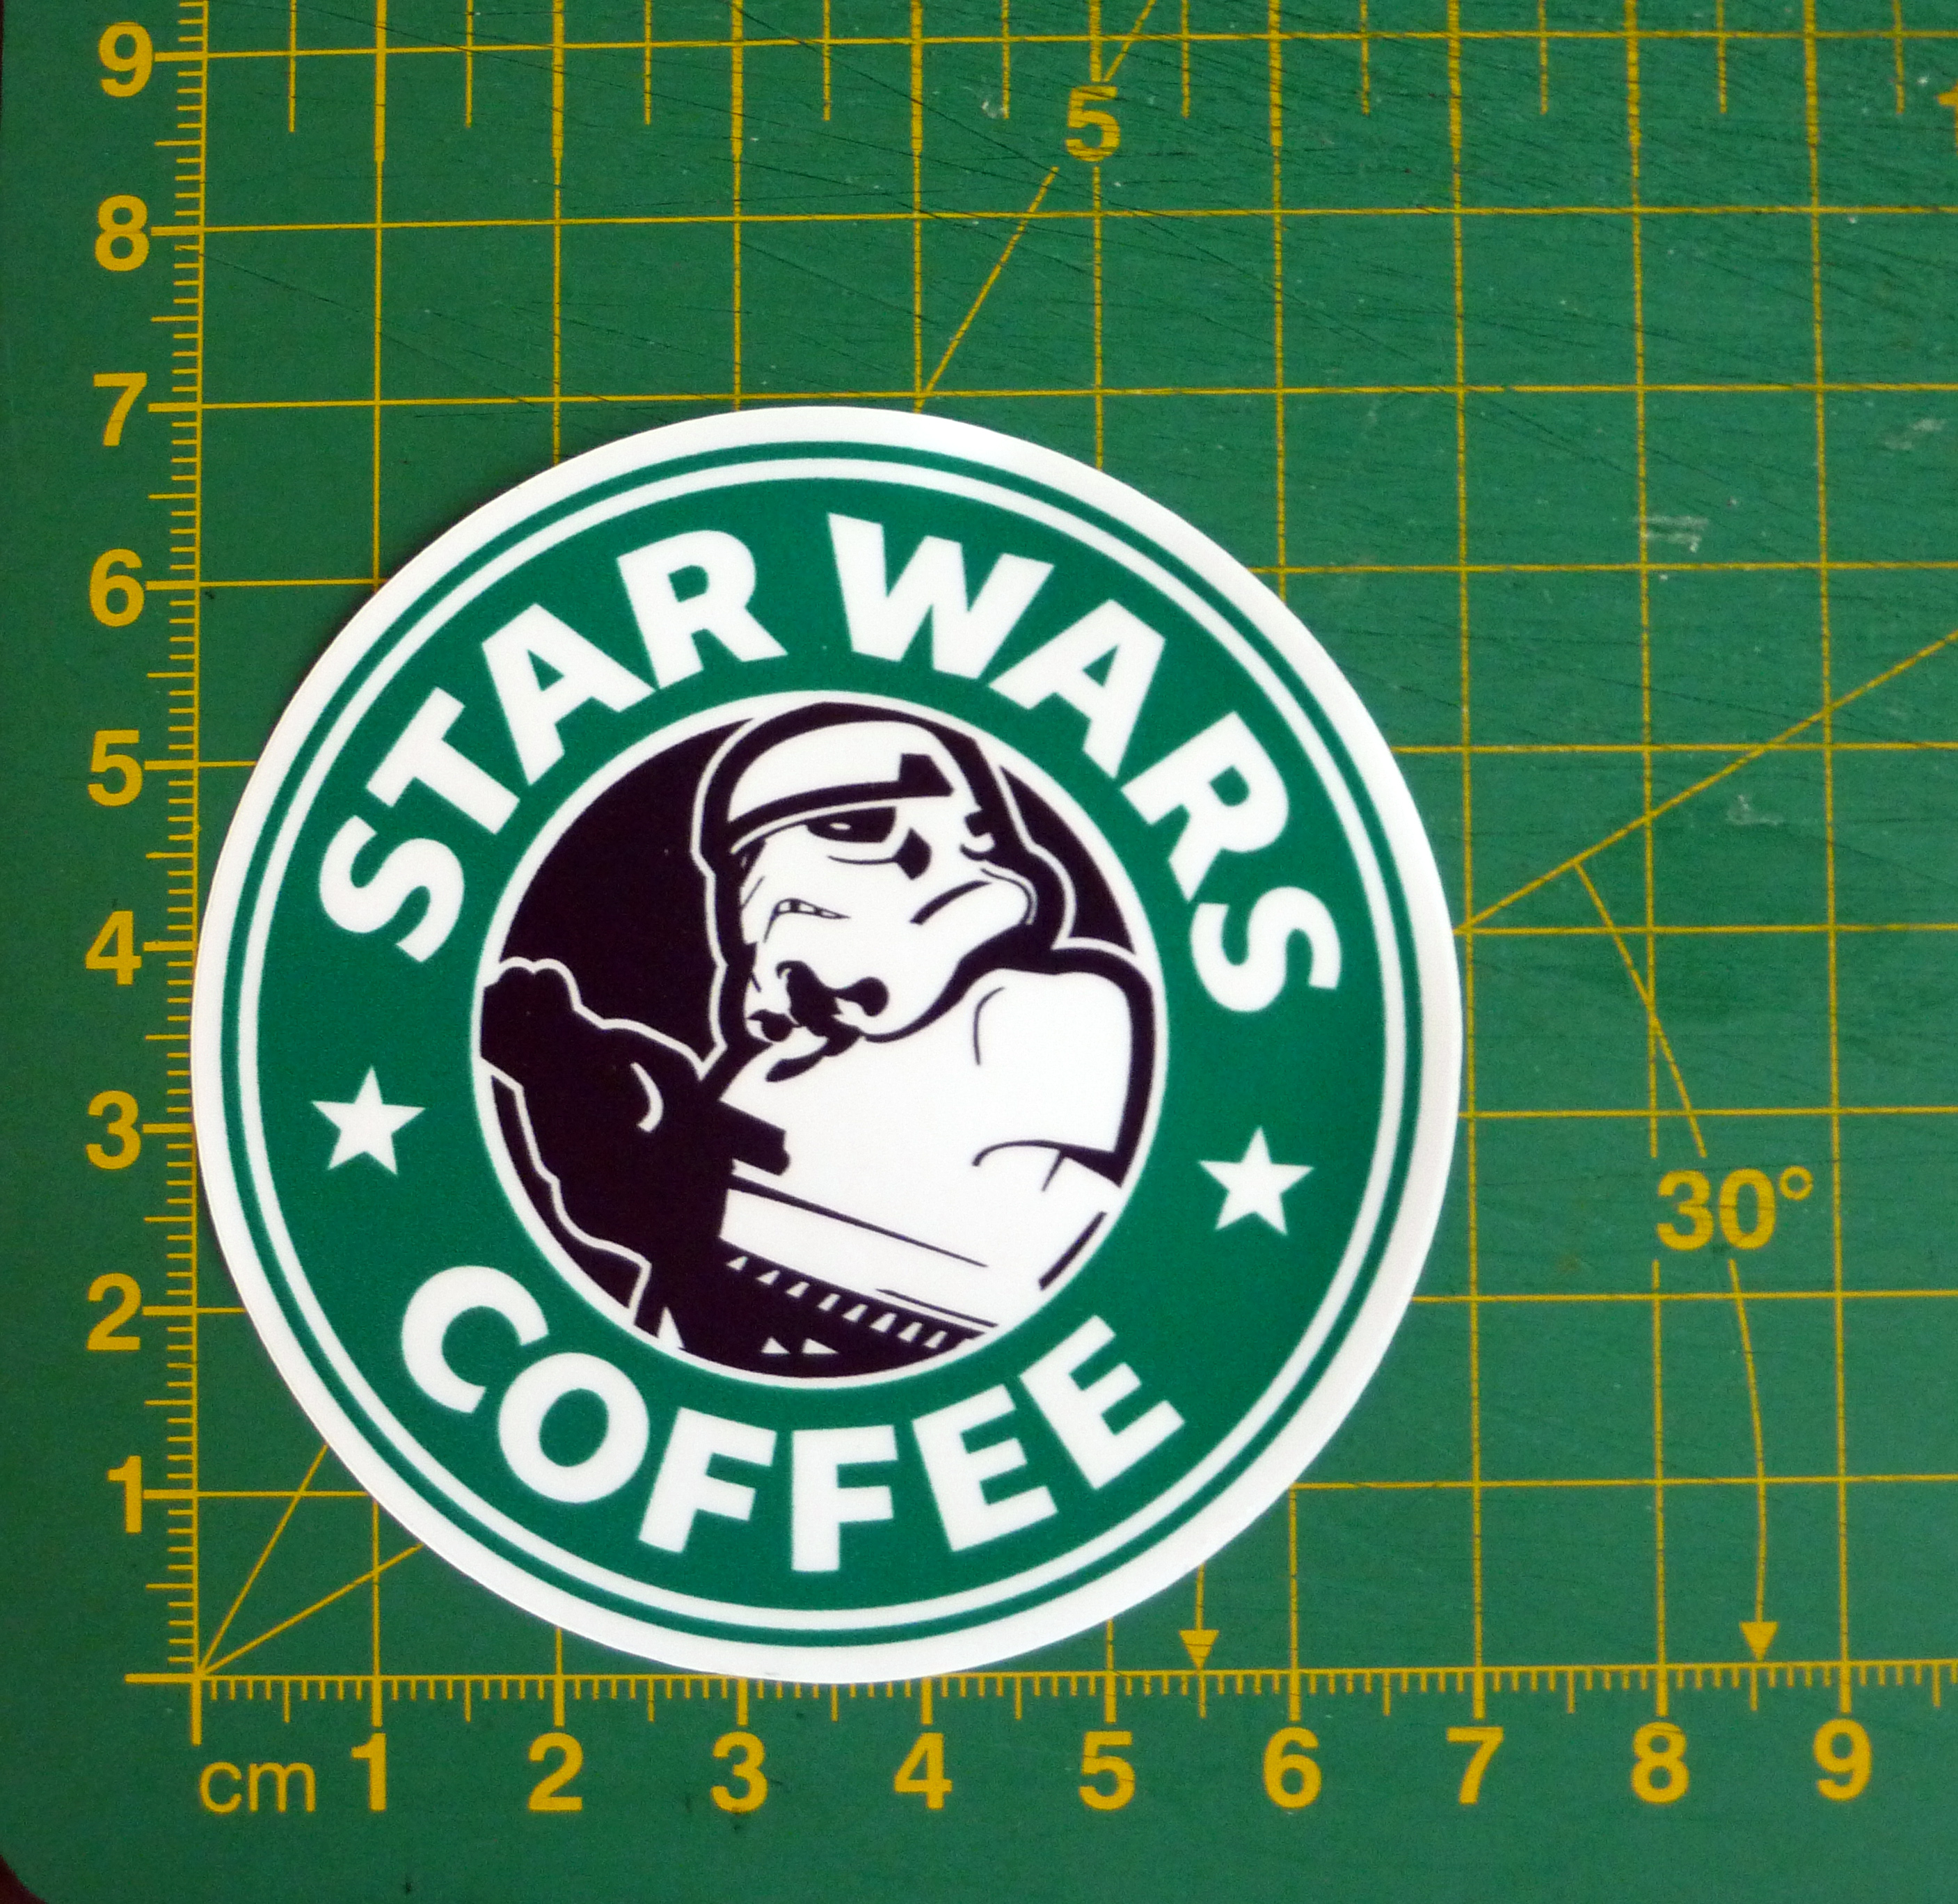 star wars coffee sticker